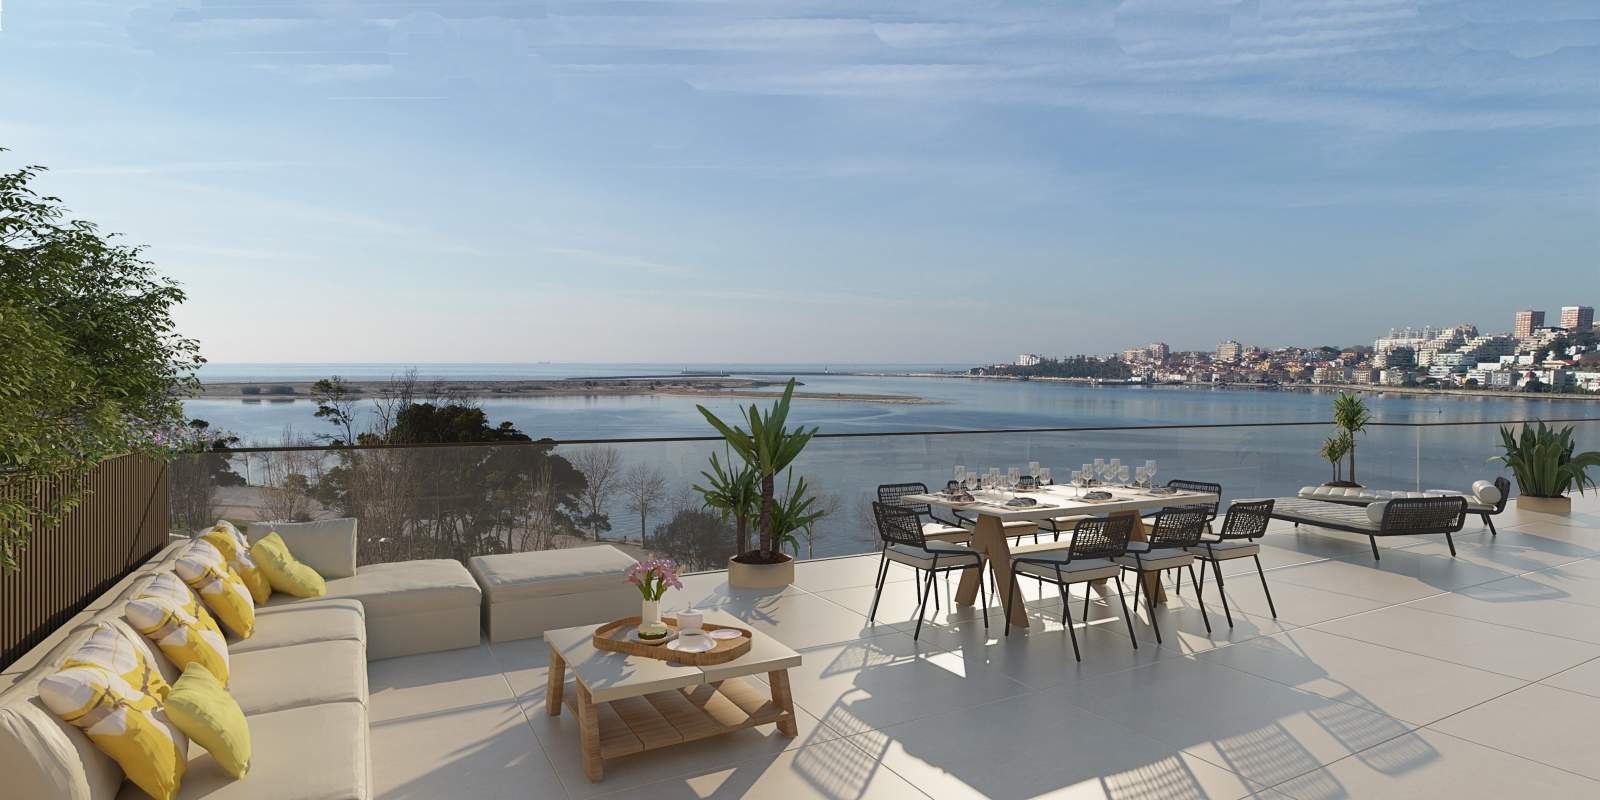 Wohnung zu verkaufen mit Terrasse, in exklusiver Wohnanlage, V. N. Gaia, Porto, Portugal_175479